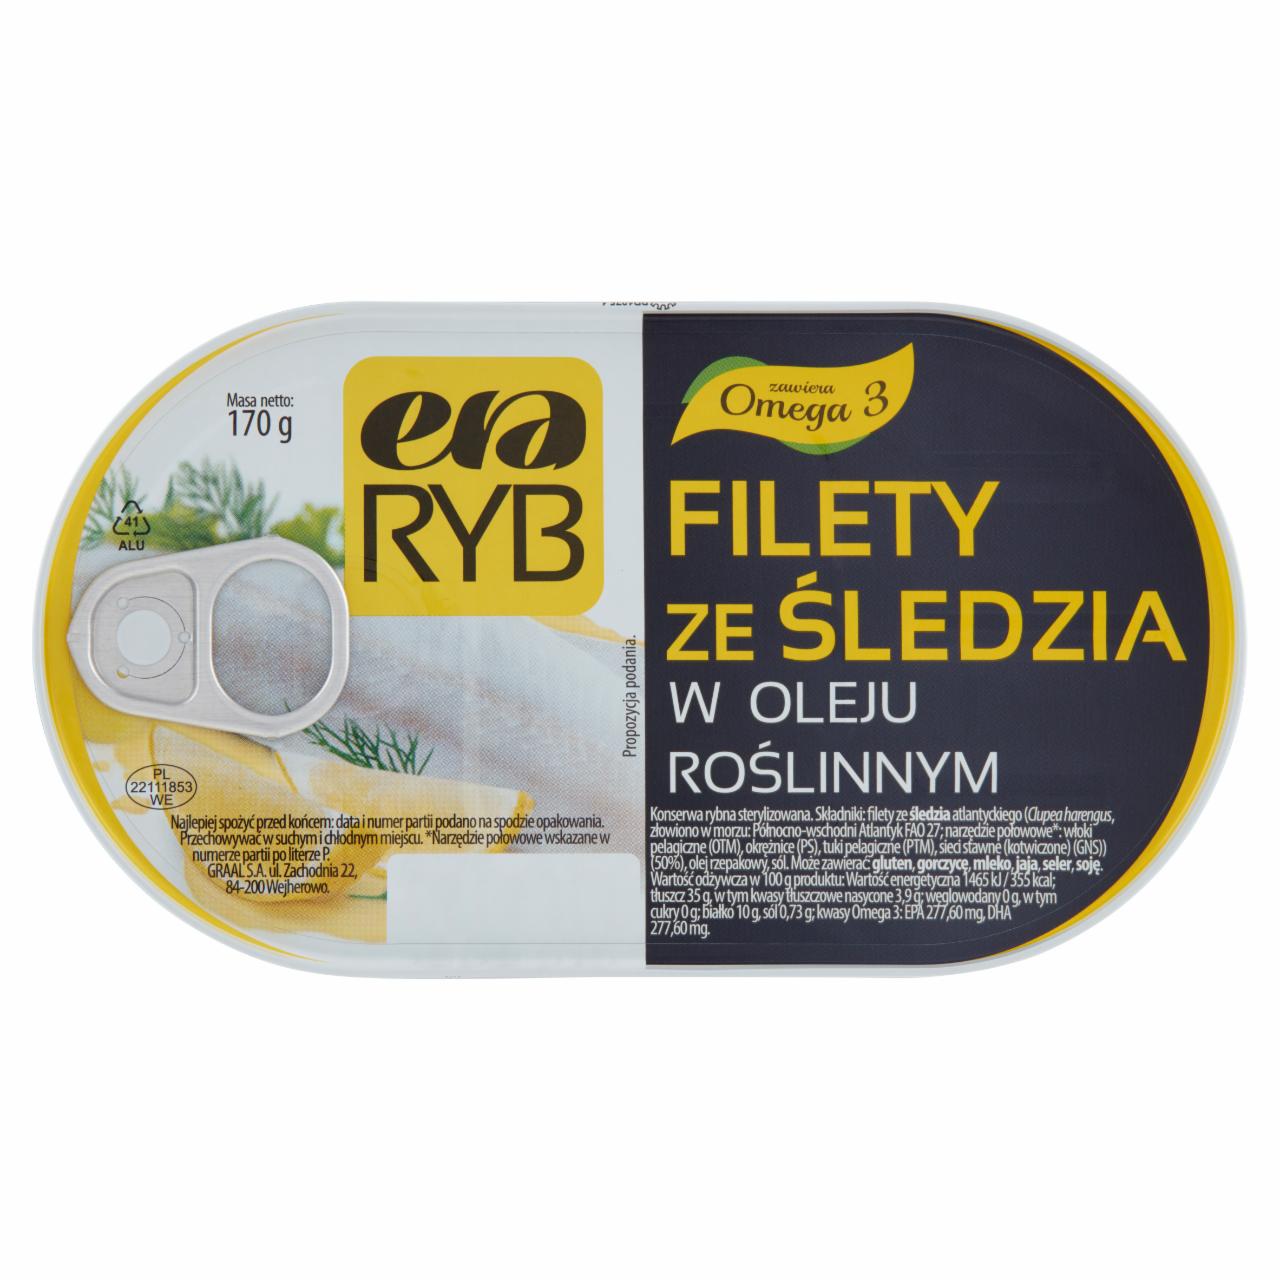 Zdjęcia - Era Ryb Filety ze śledzia w oleju roślinnym 170 g